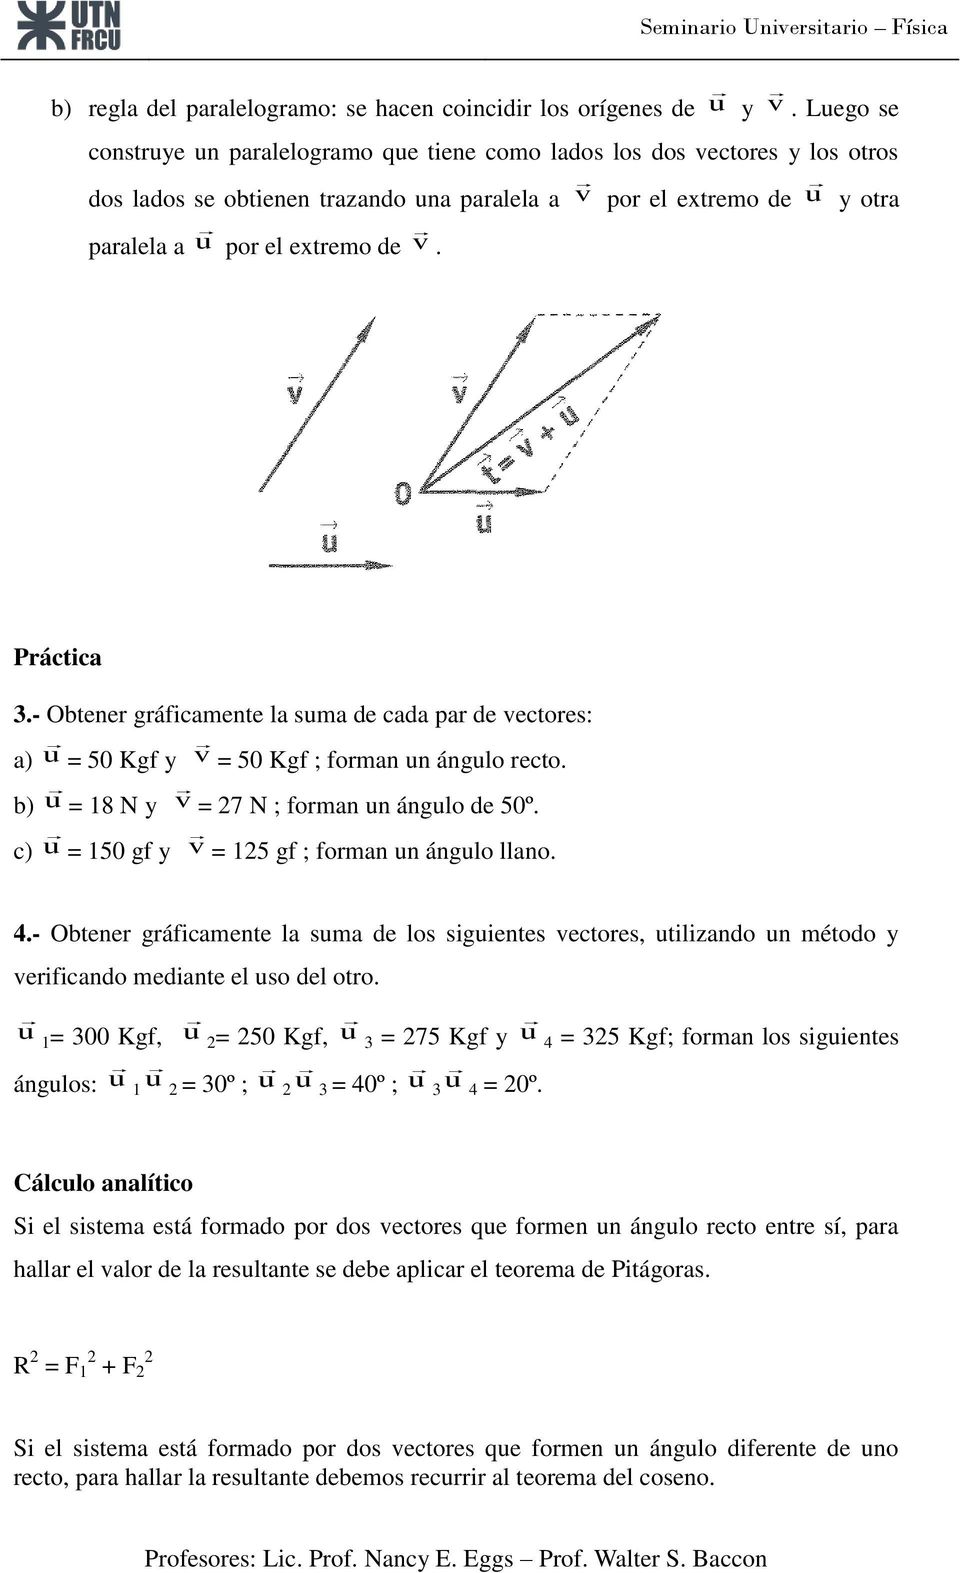 - Obtener gráficamente la suma de cada par de vectores: a) u = 50 Kgf y v = 50 Kgf ; forman un ángulo recto. b) u = 18 N y v = 27 N ; forman un ángulo de 50º.